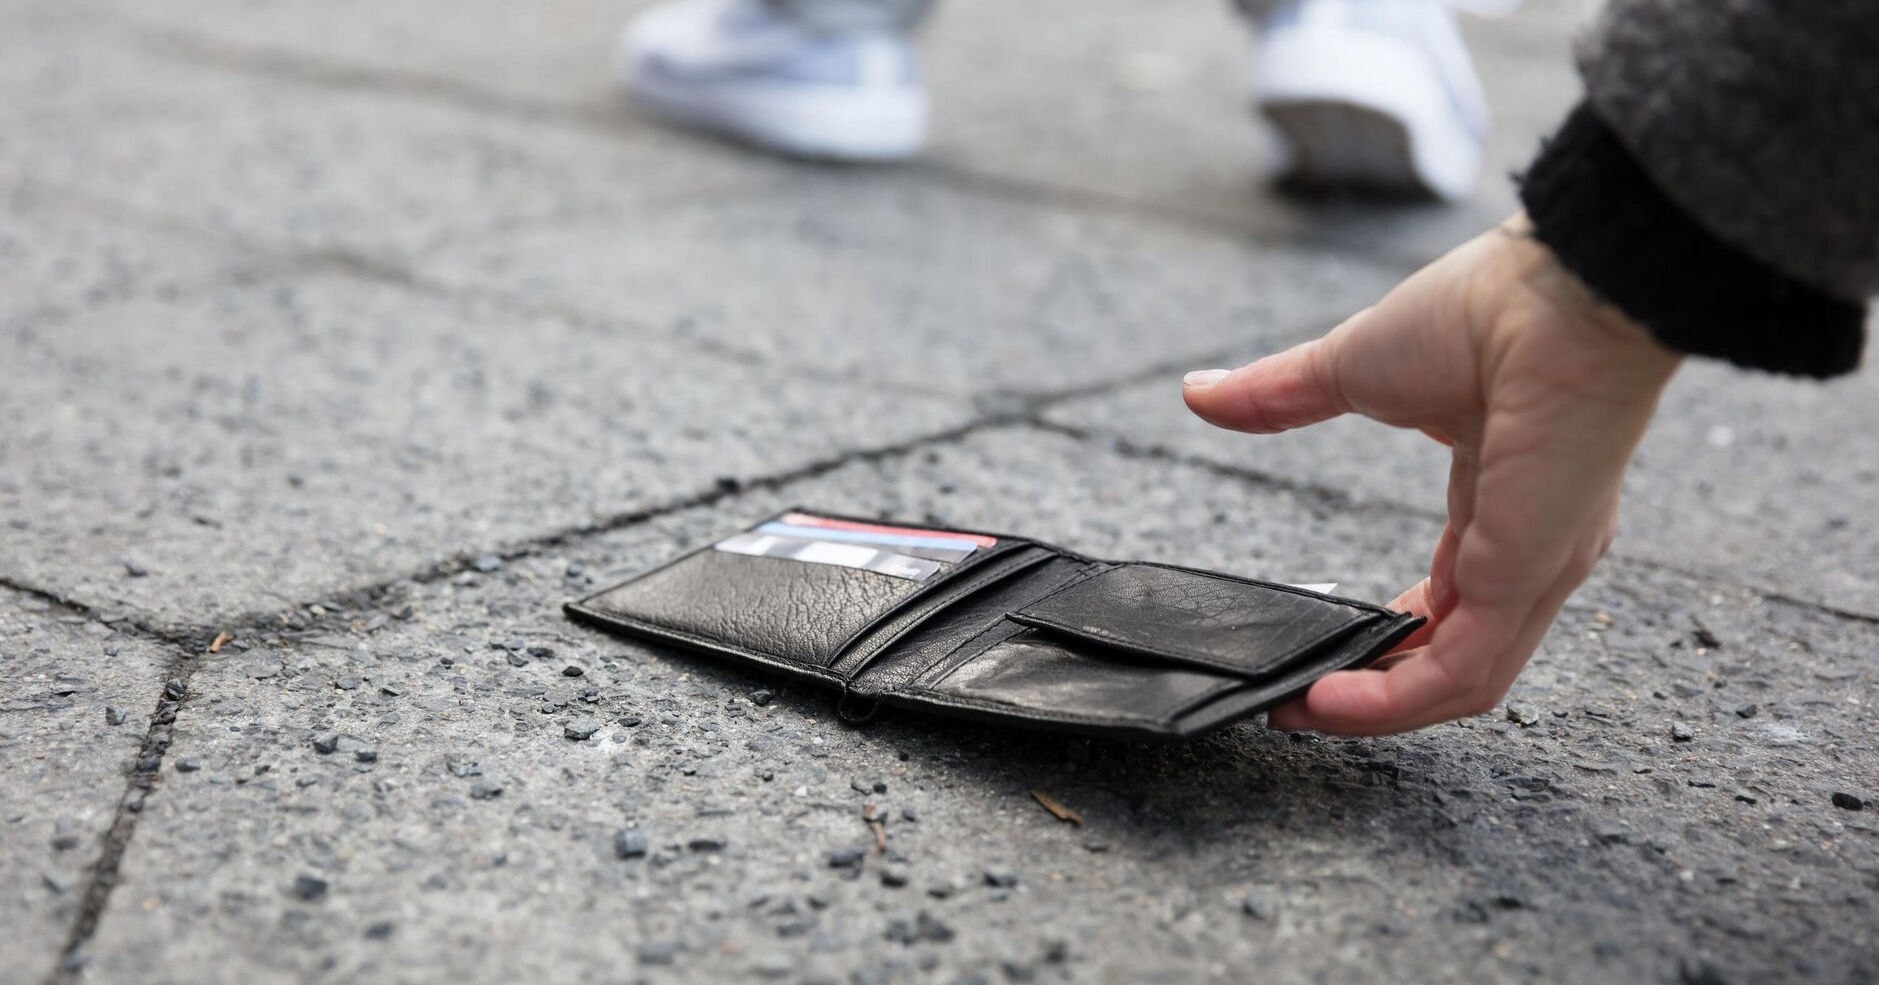 Безработный 36-летний элистинец нашел банковскую карту и расплатился ею в магазине